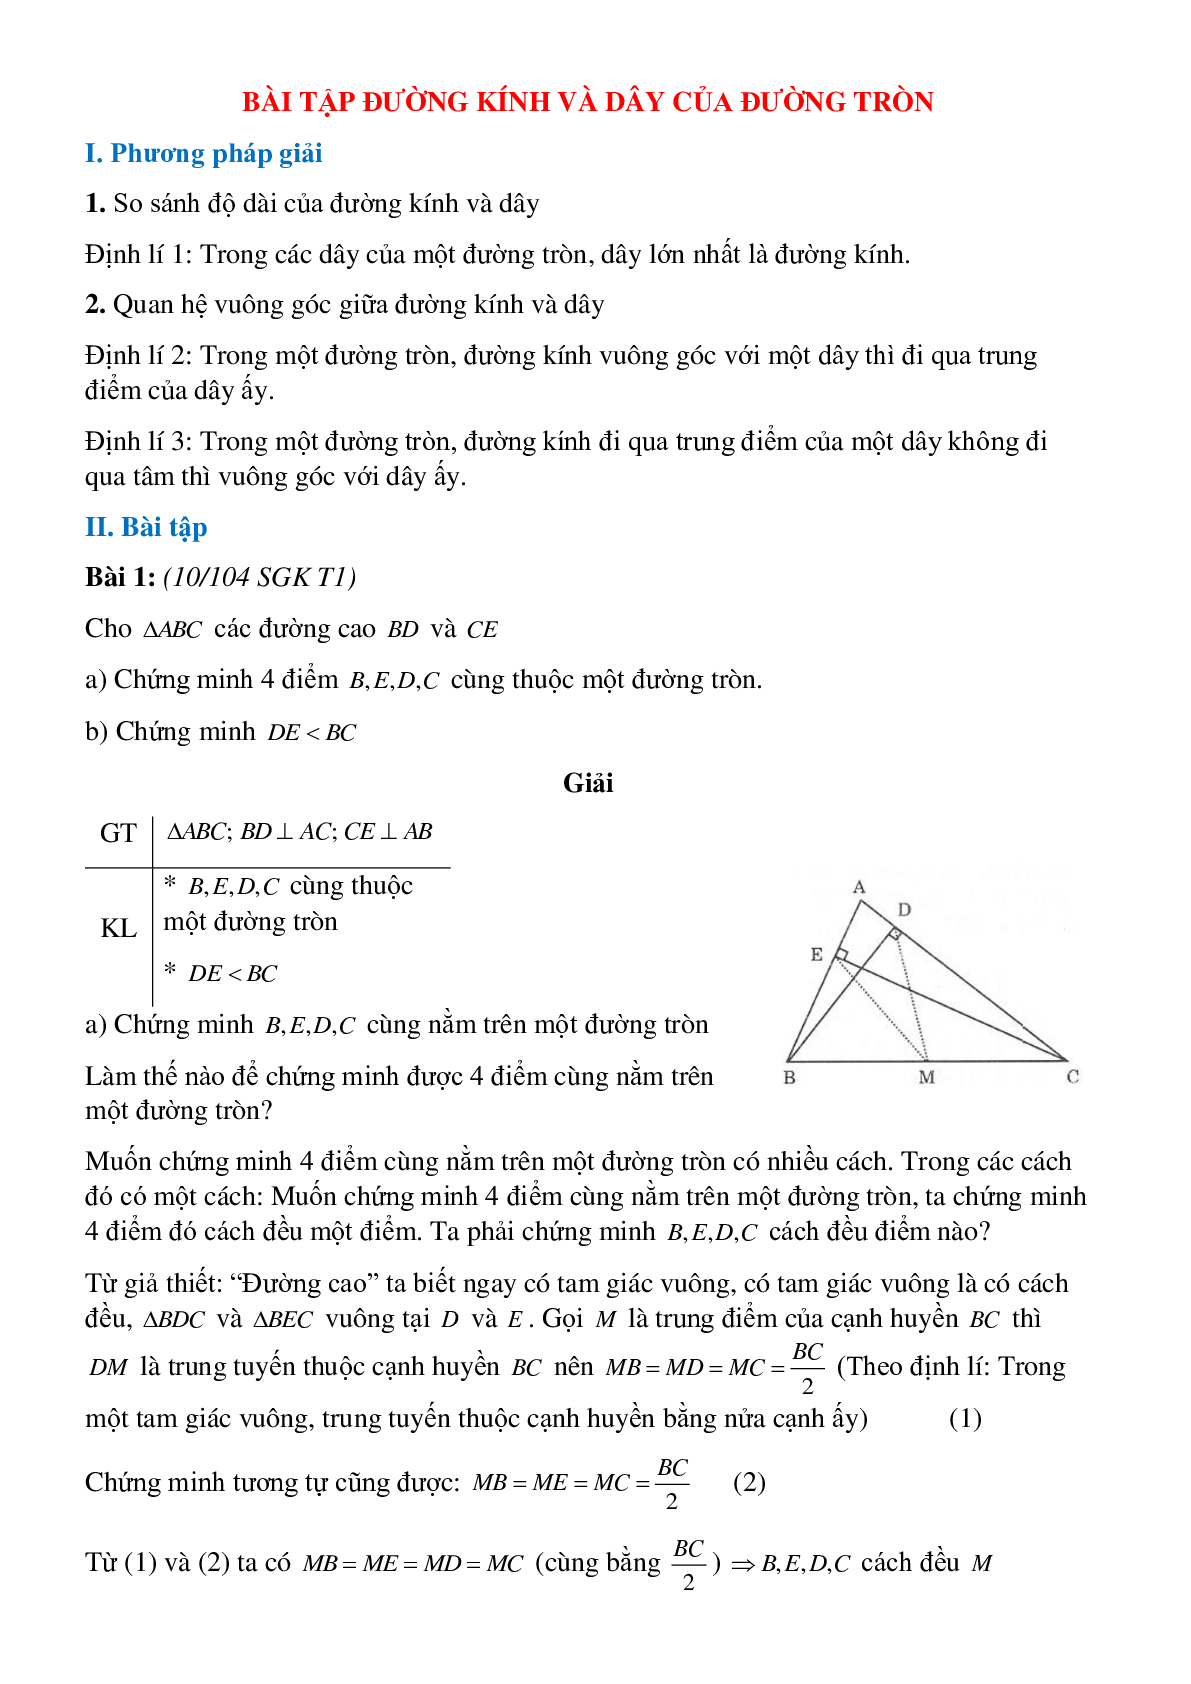 50 Bài tập Đường kính và dây của đường tròn (có đáp án)- Toán 9 (trang 1)